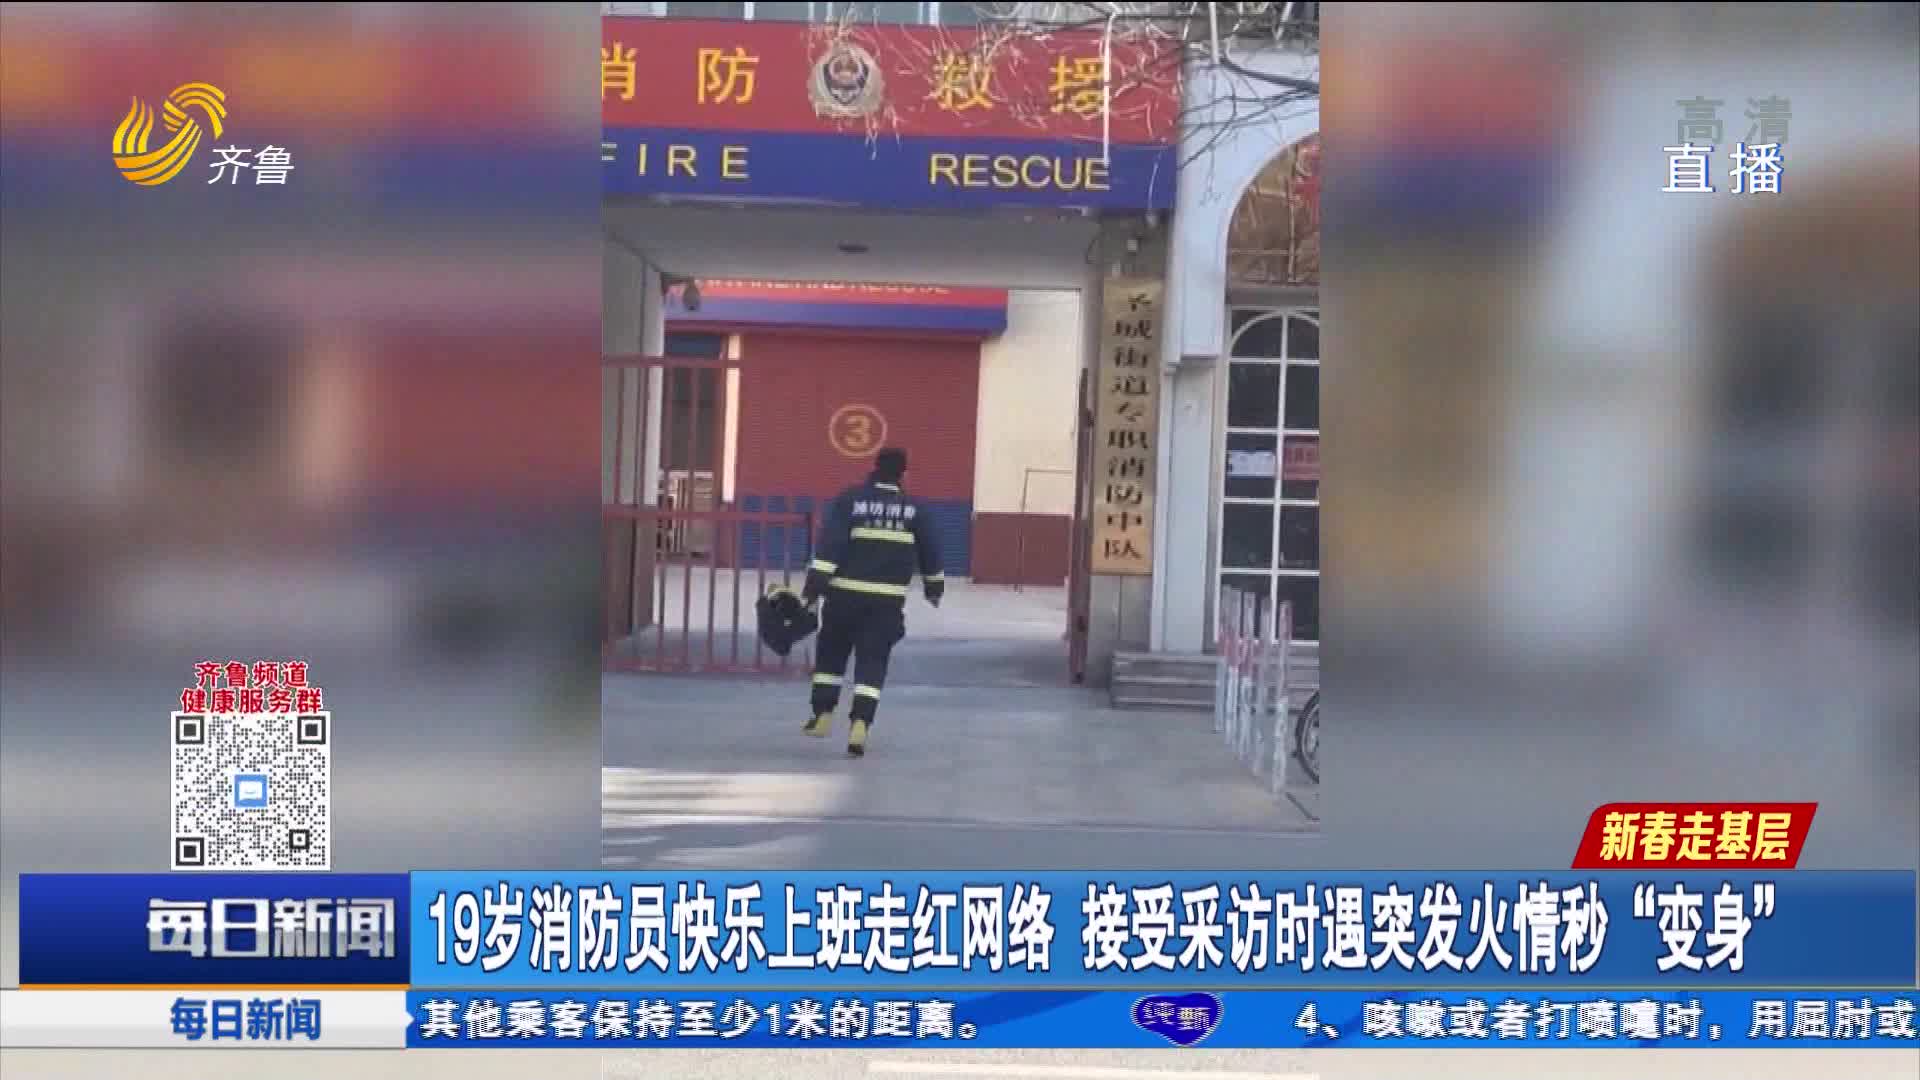 19岁消防员快乐上班走红网络 接受采访时遇突发火情秒“变身”